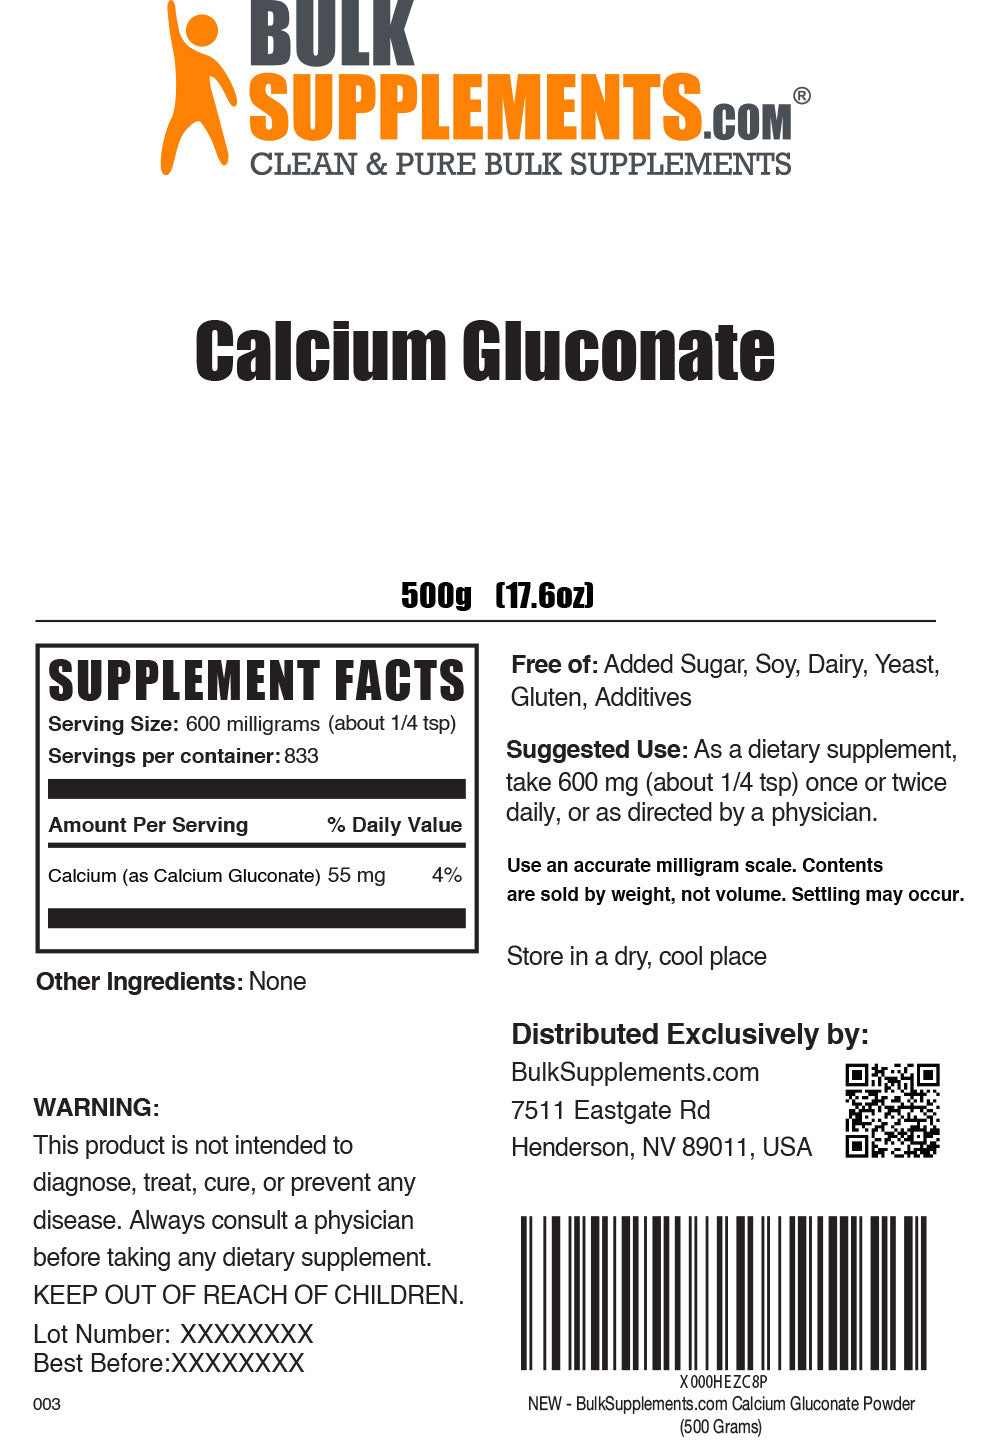 Calcium Gluconate Label 500g